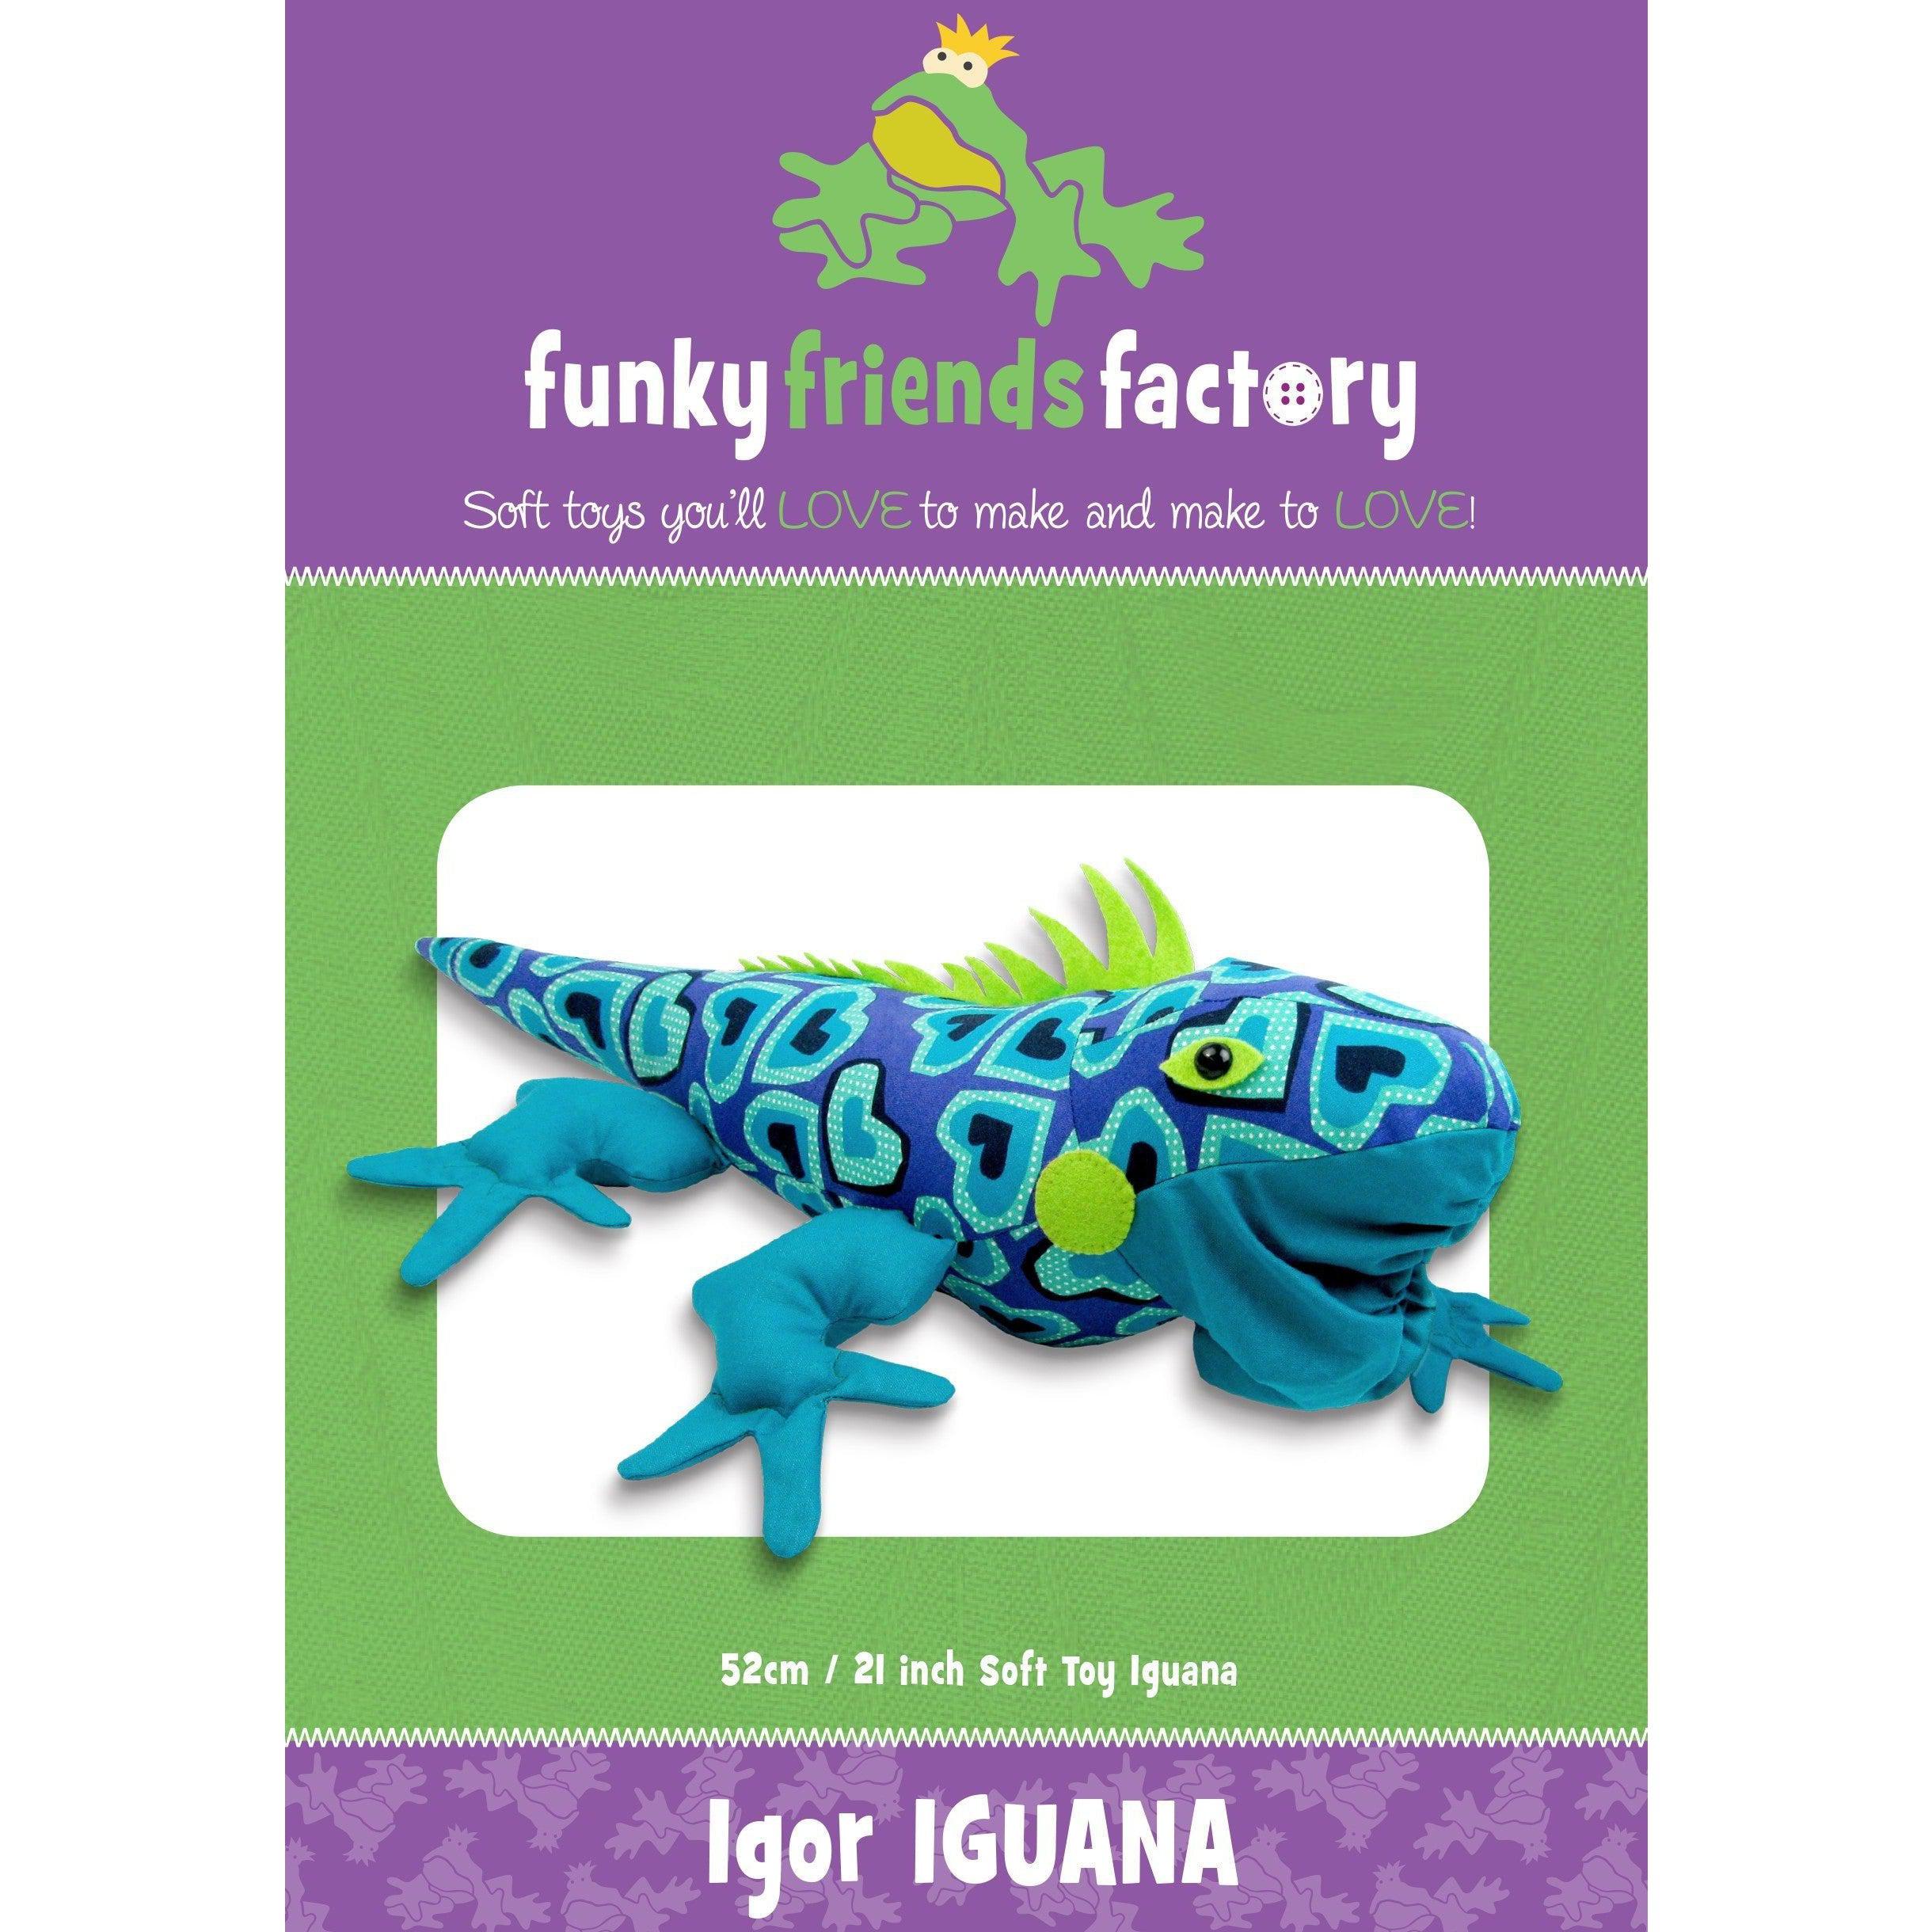 Igor Iguana Funky Friends Factory Pattern